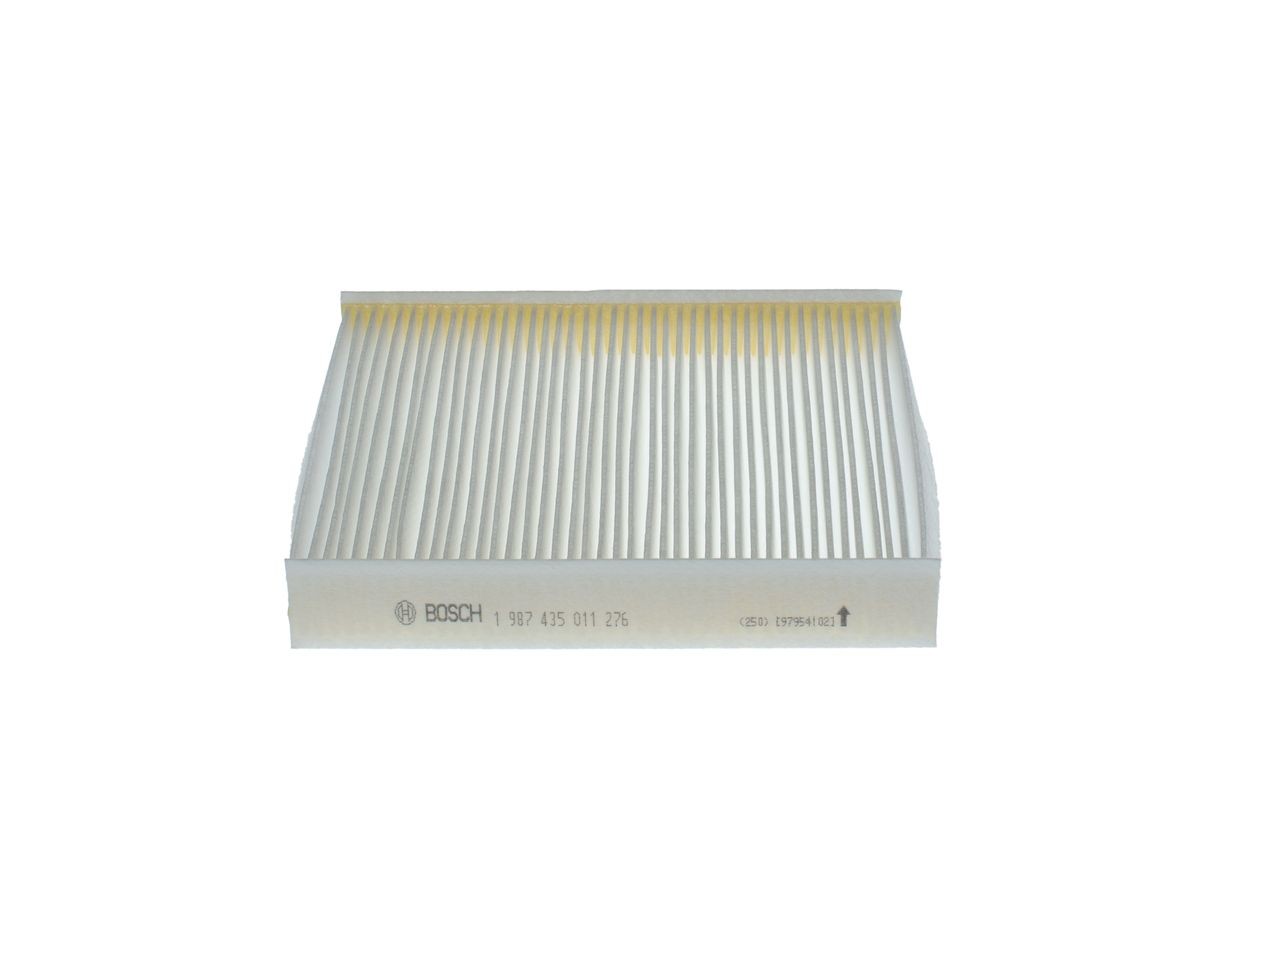 1987435011 Air con filter M 5011 BOSCH Particulate Filter, 215 mm x 200 mm x 35 mm